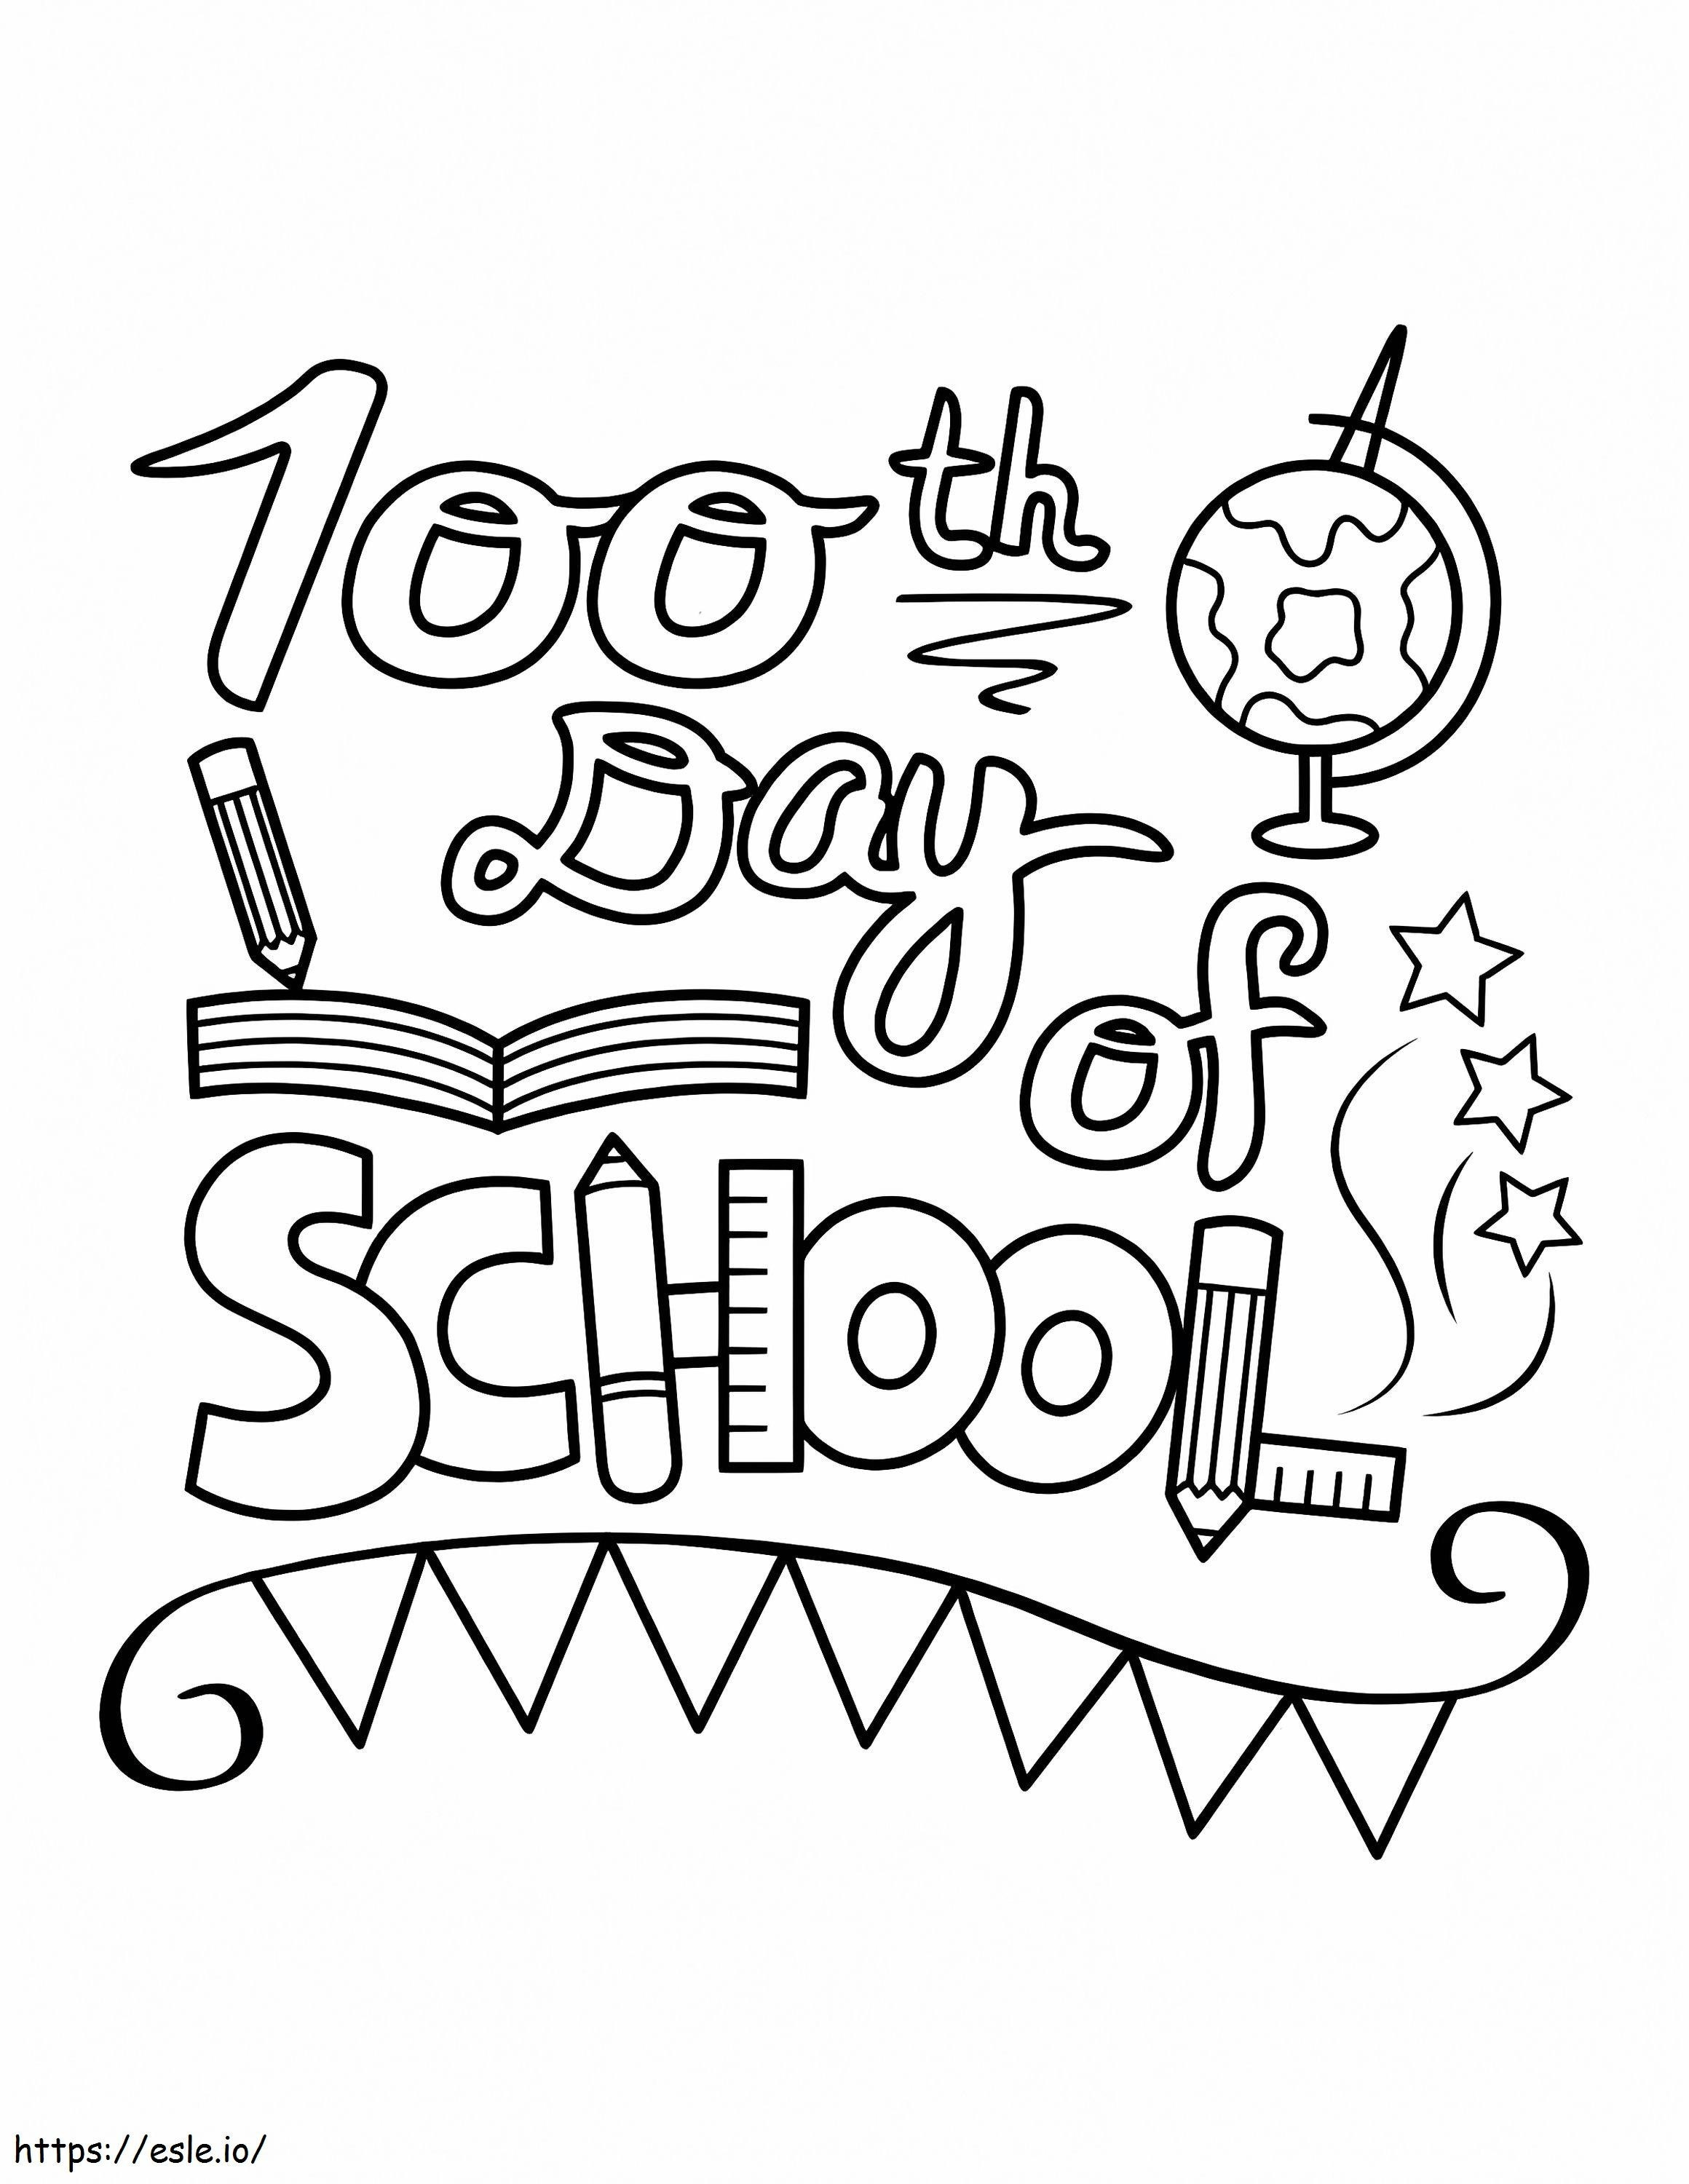 100esimo giorno di scuola da stampare da colorare